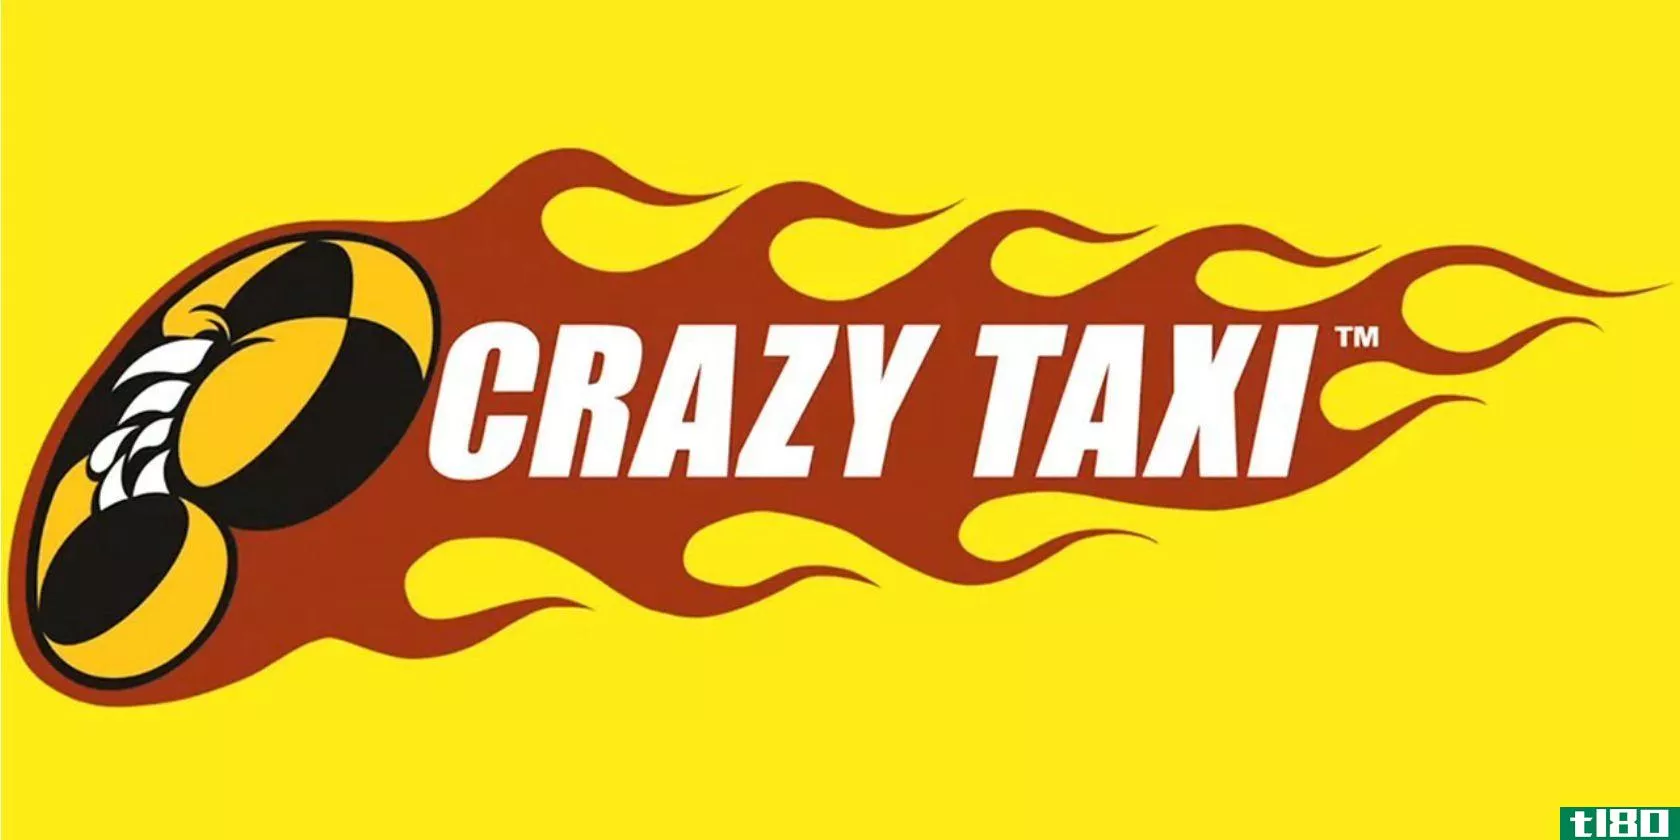 crazy-taxi-logo